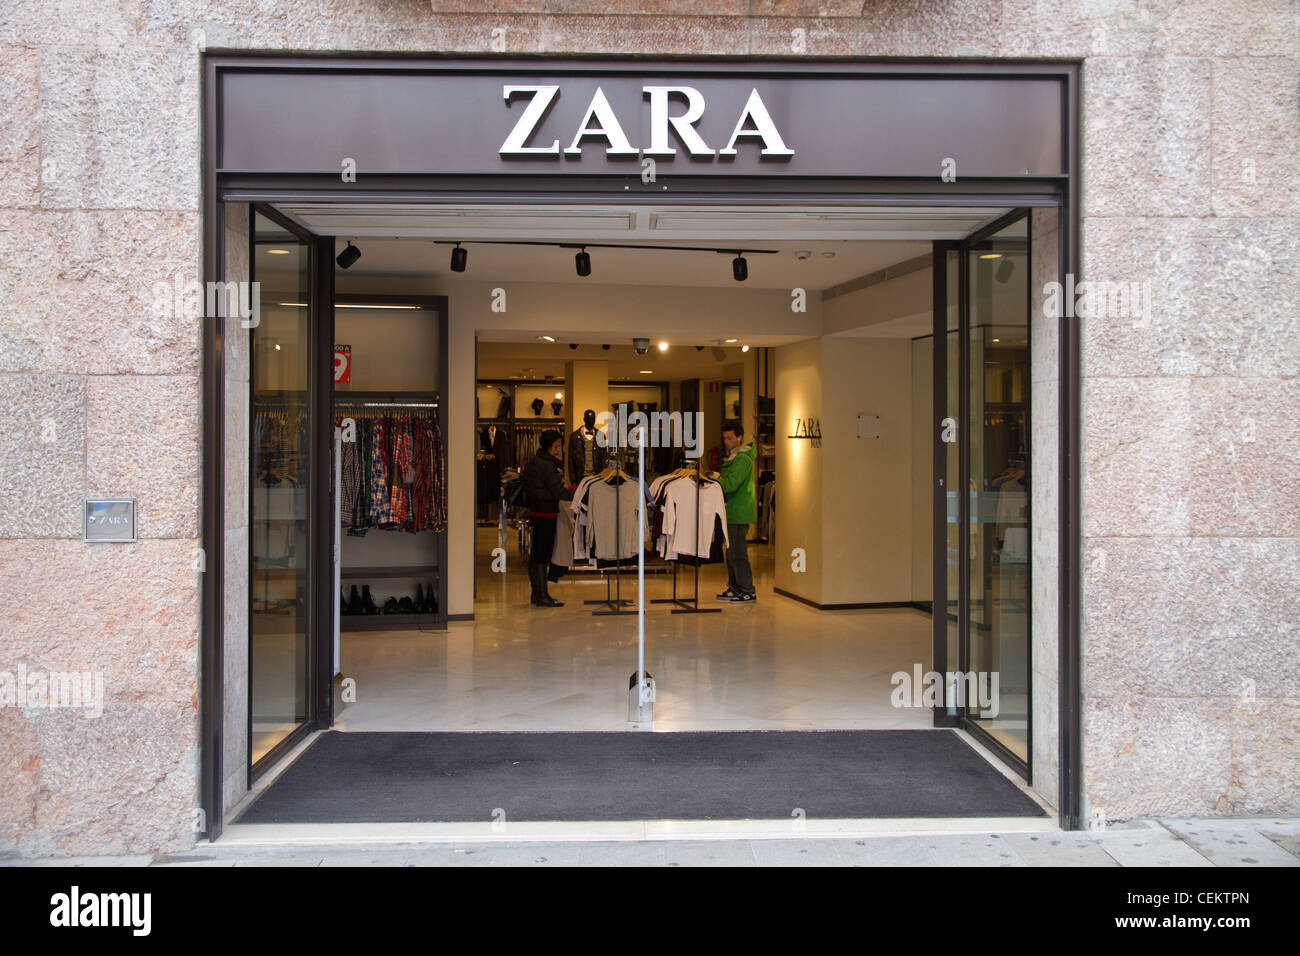 Zara store shop Spain Stock Photo - Alamy